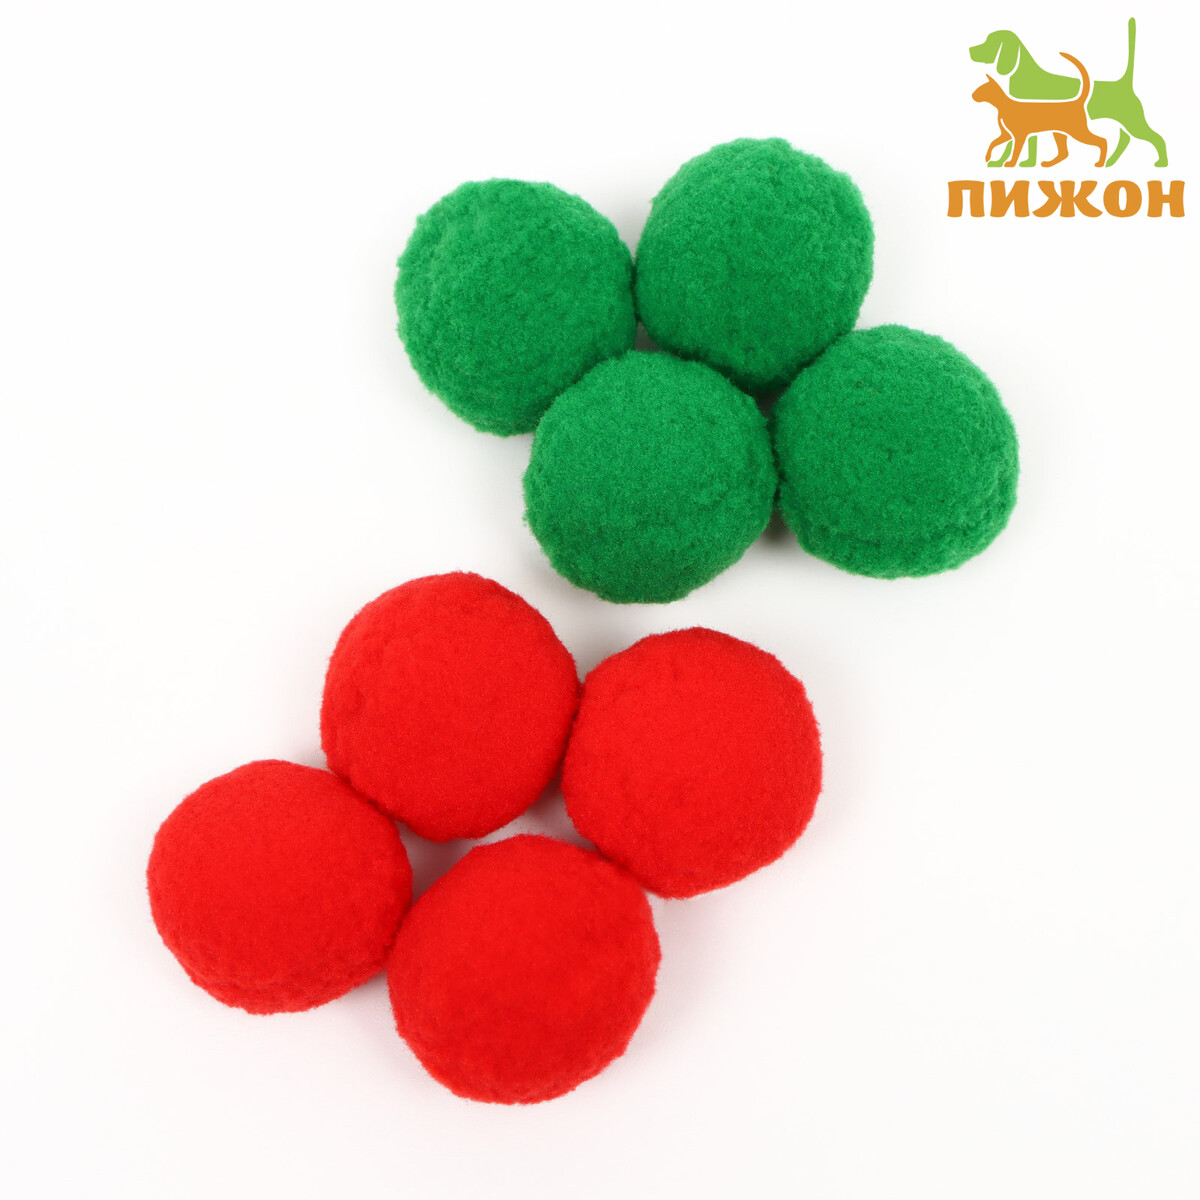 Набор плюшевых шариков для кошек, 8 шт, зеленый/красный